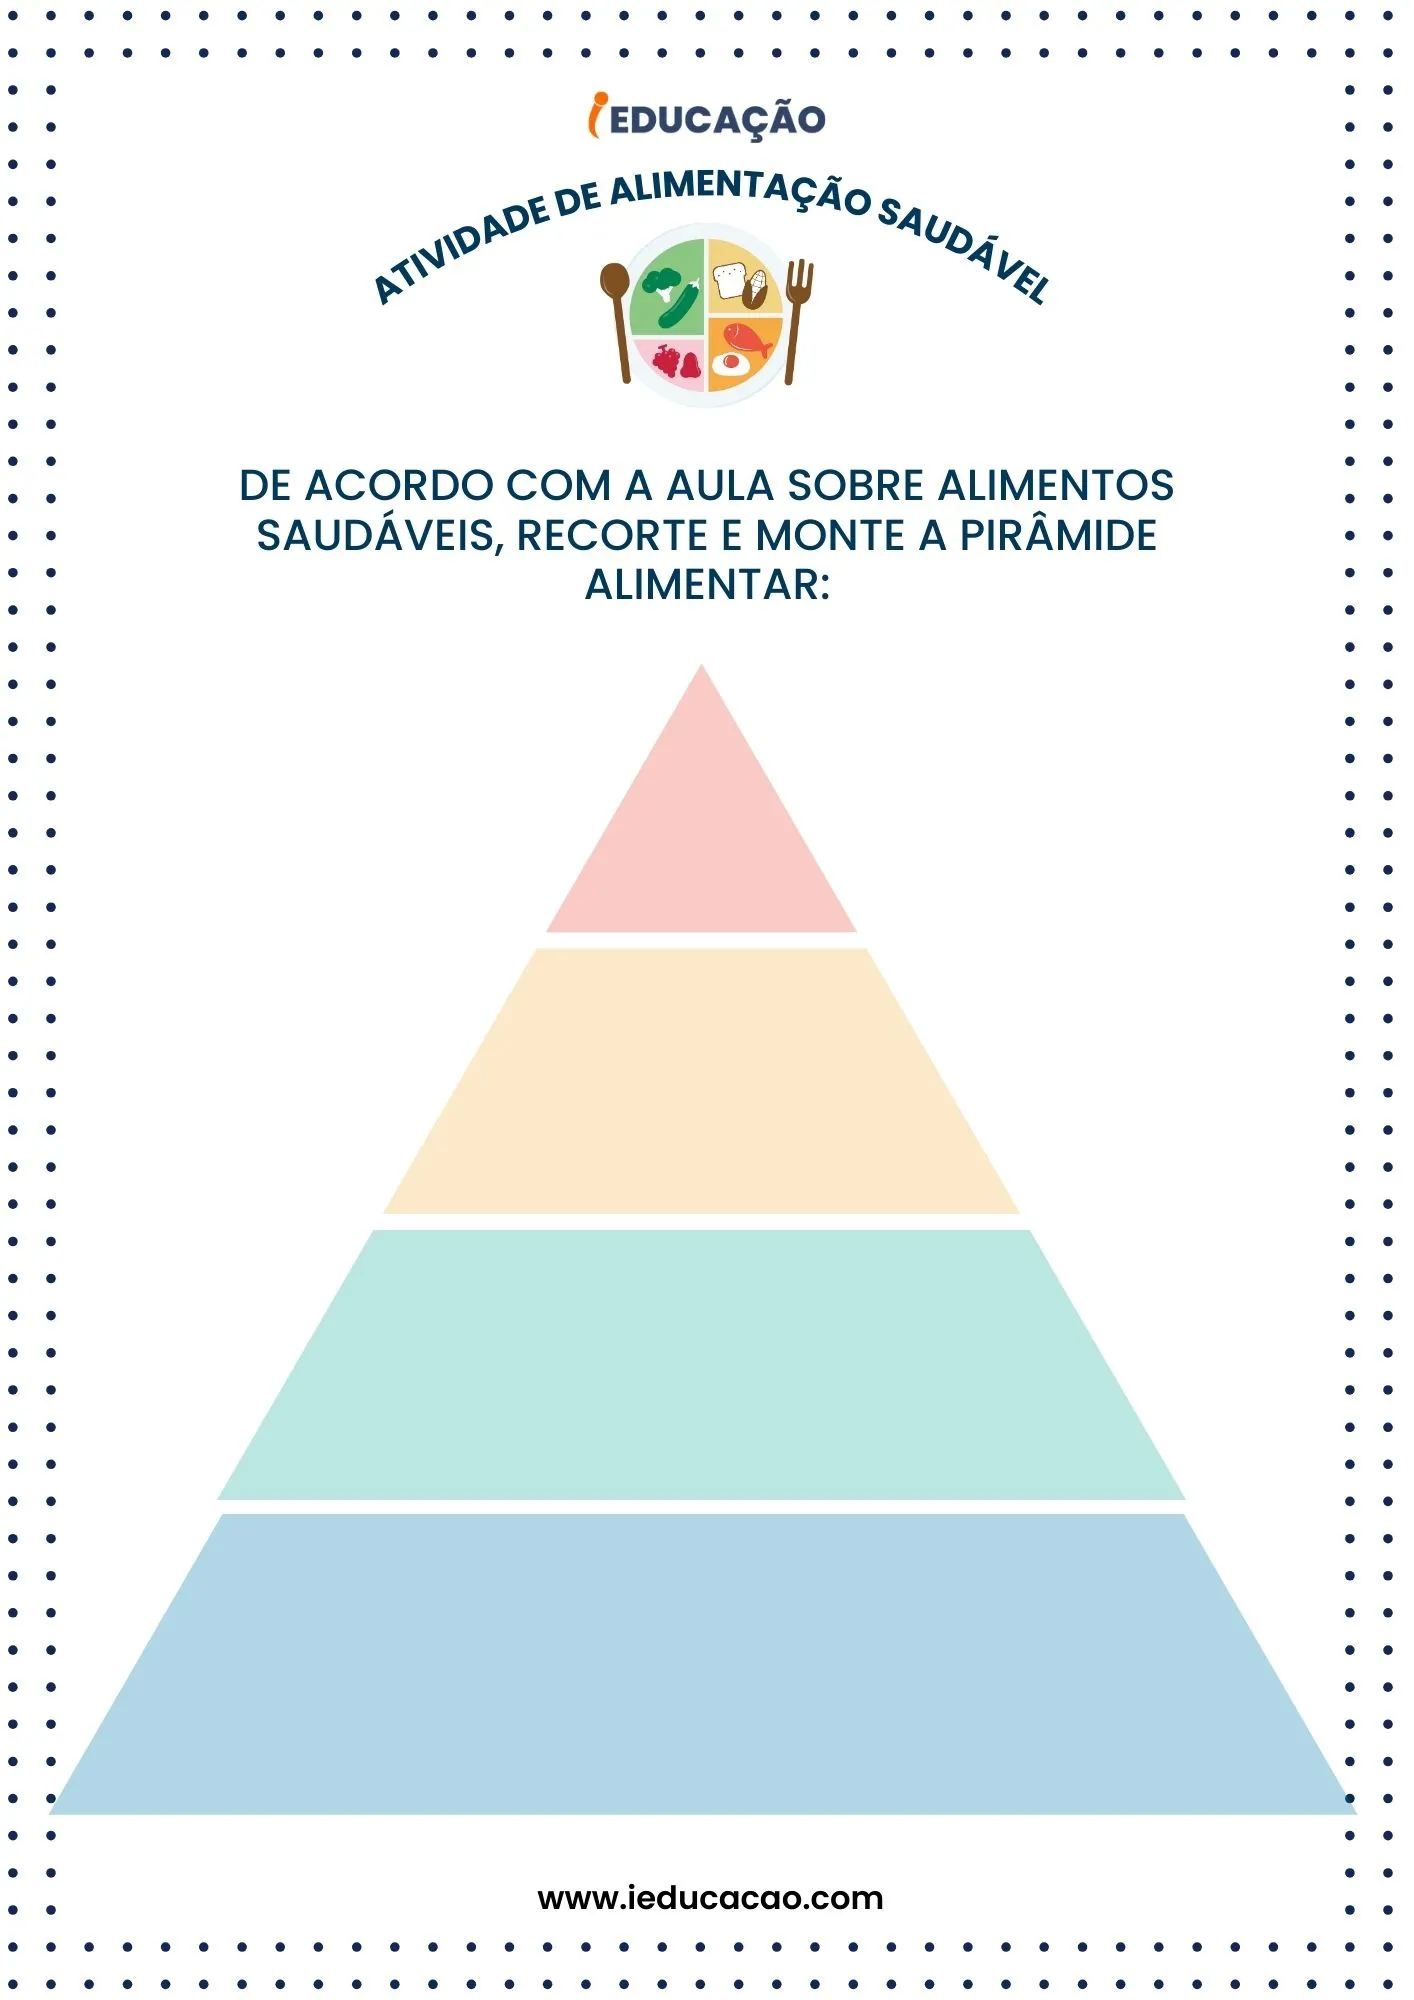 Atividades de Alimentação Saudável - Pirâmide Alimentar para Educação Infantil.jpg